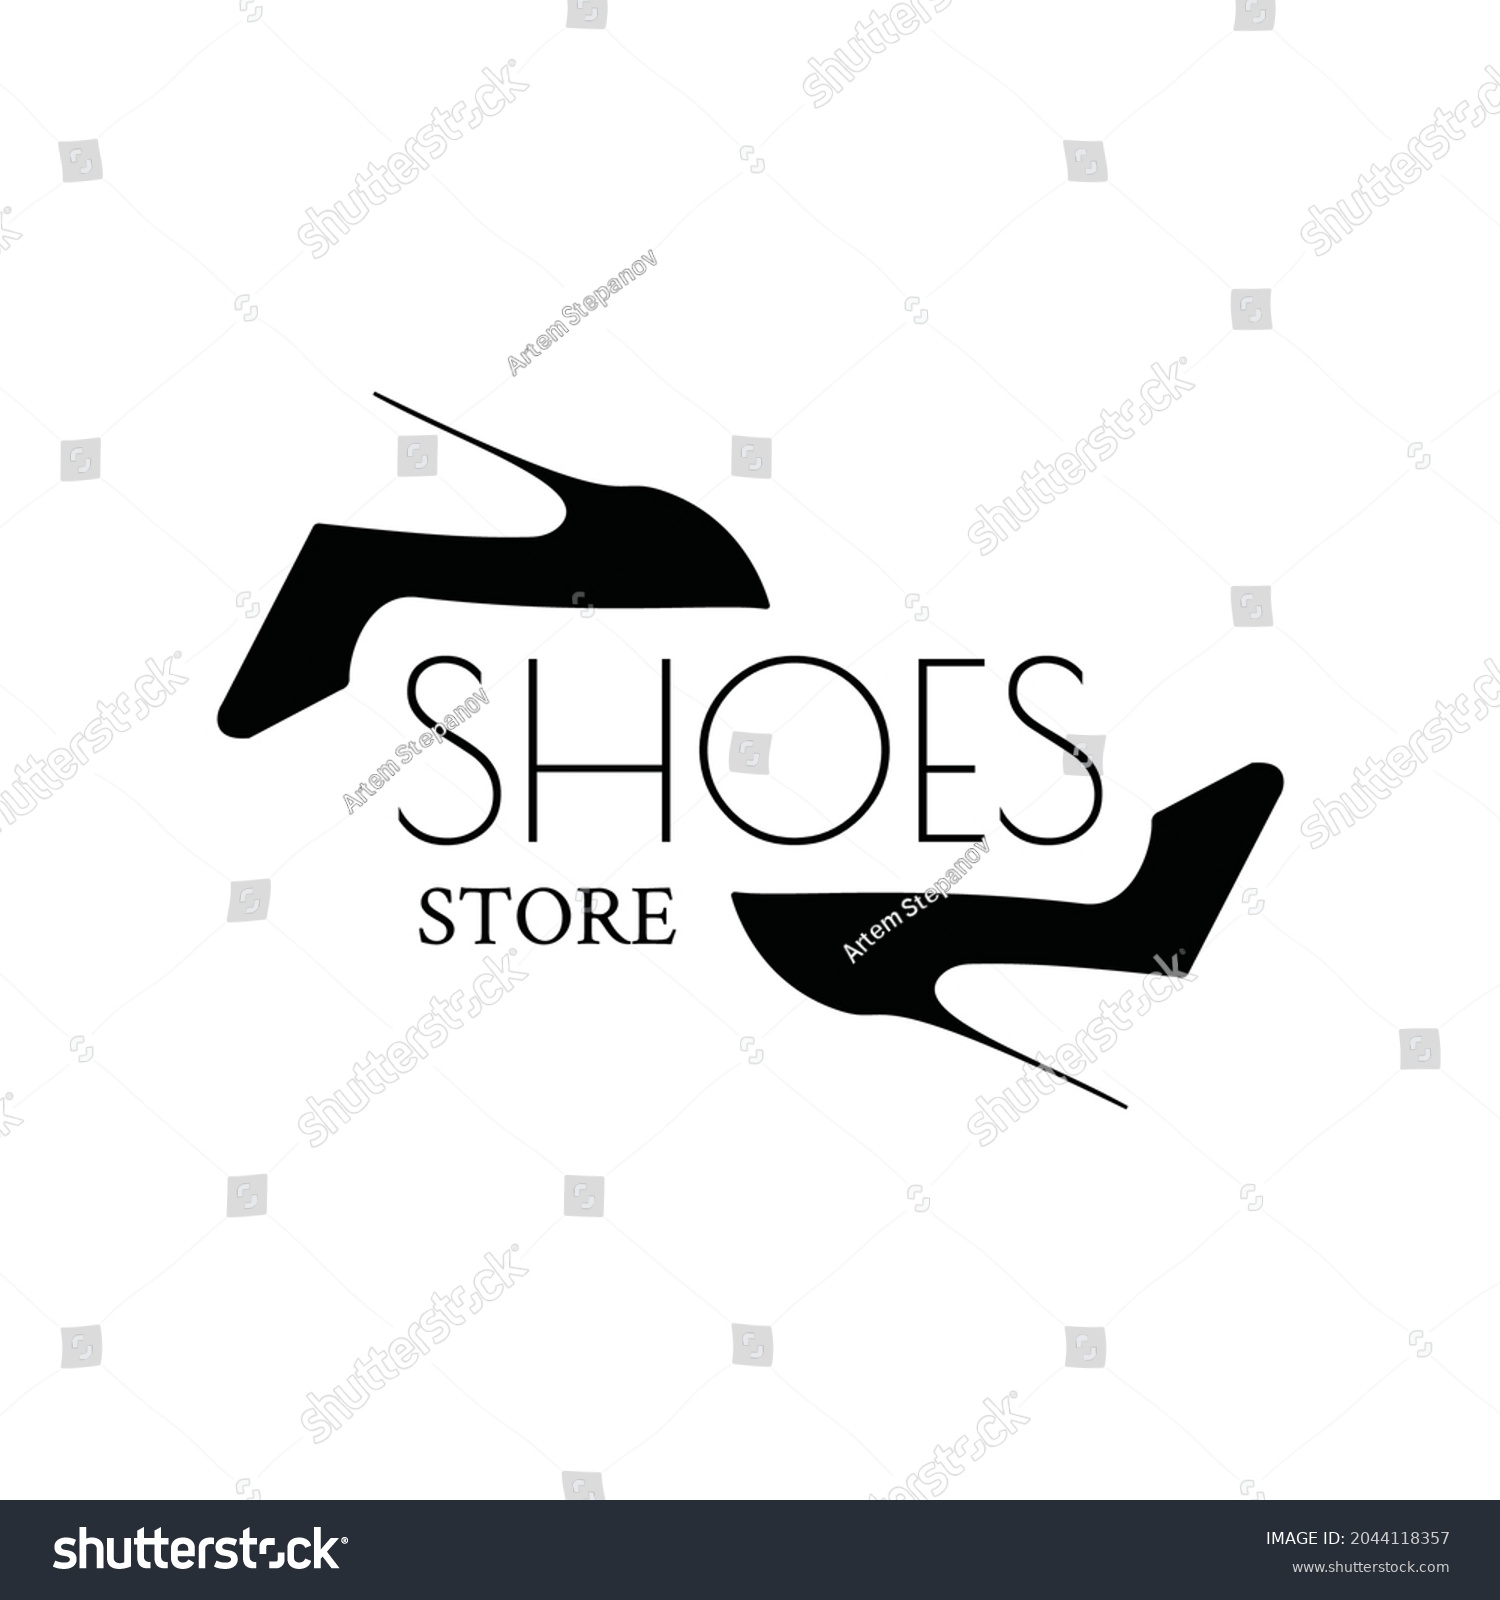 8,231 High heels logo Images, Stock Photos & Vectors | Shutterstock